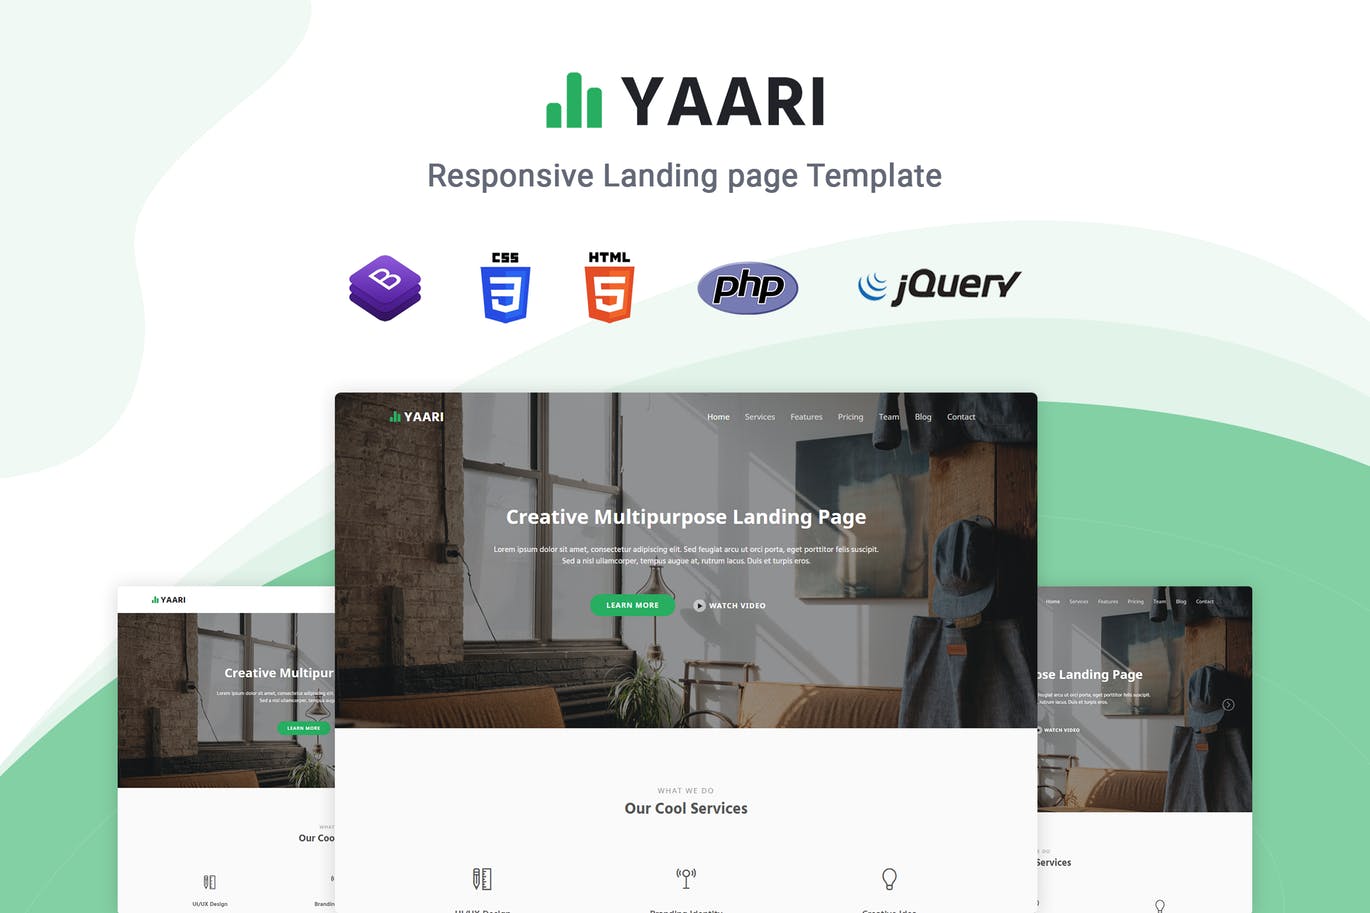 应用开发/业务代理等多用途着陆页HTML模板第一素材精选 Yaari – Responsive Landing page Template插图